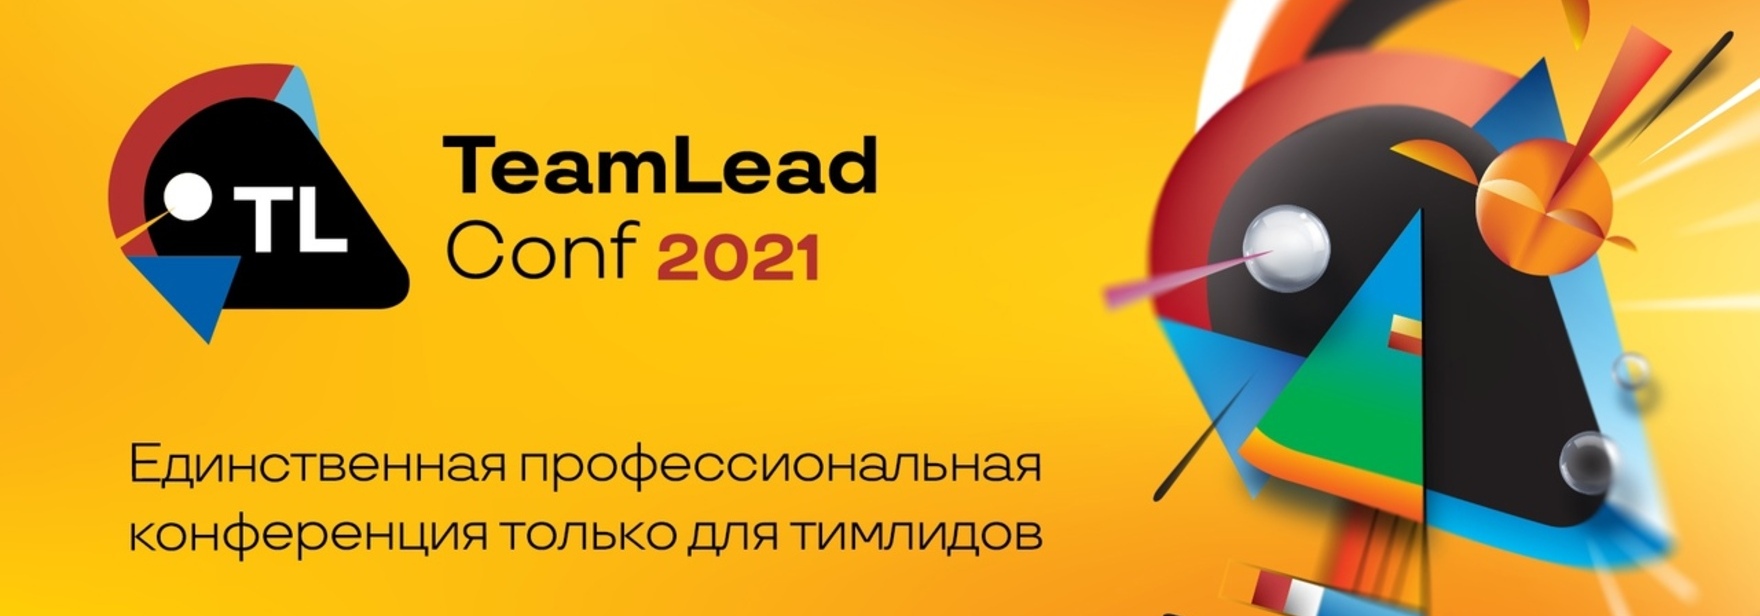 Обложка курса Конференция TeamLead Conf 2021